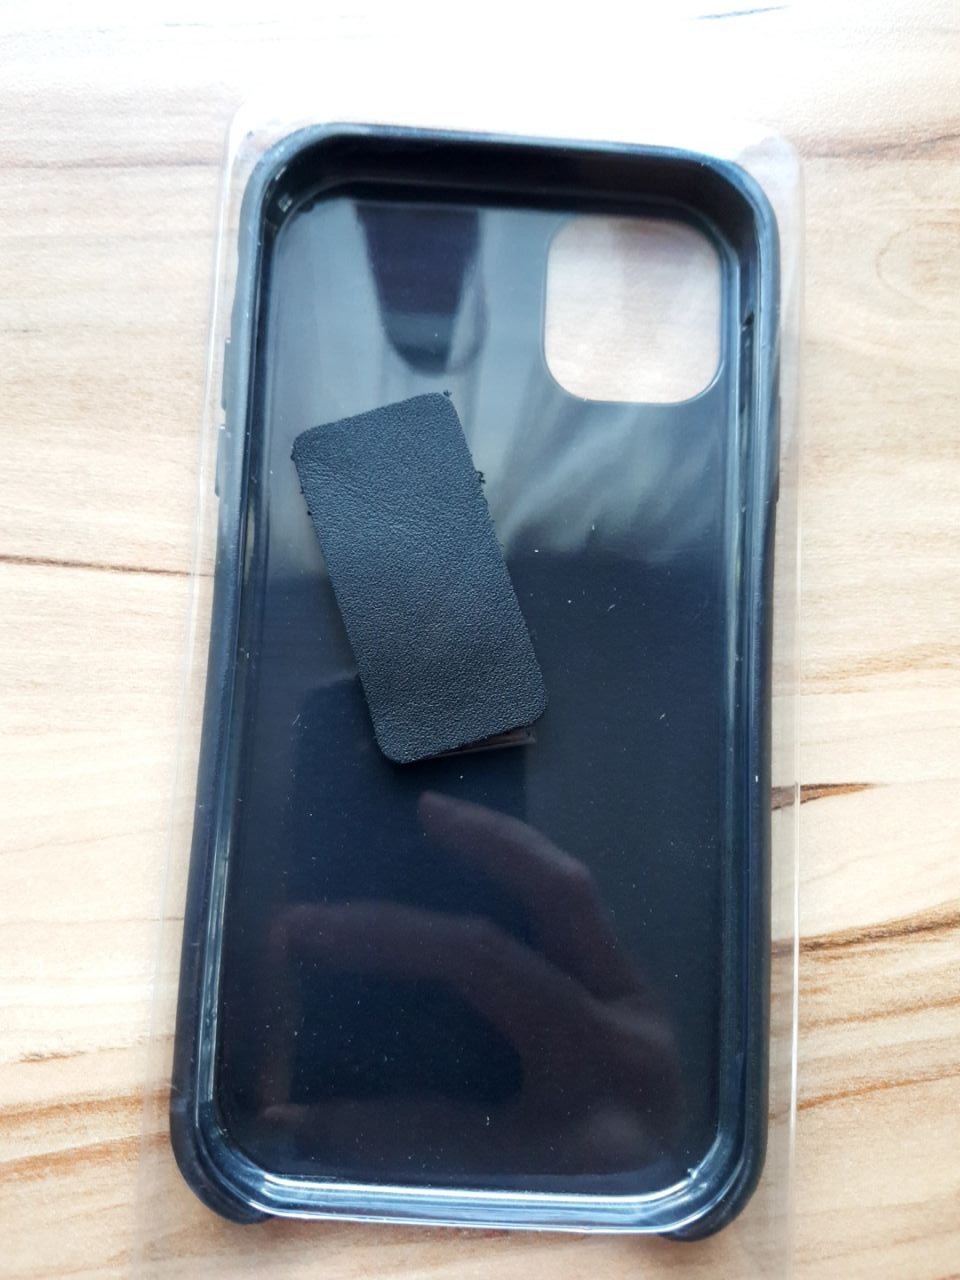 Ochranný kožený obal pro iPhone 6.1. 2019, černý  